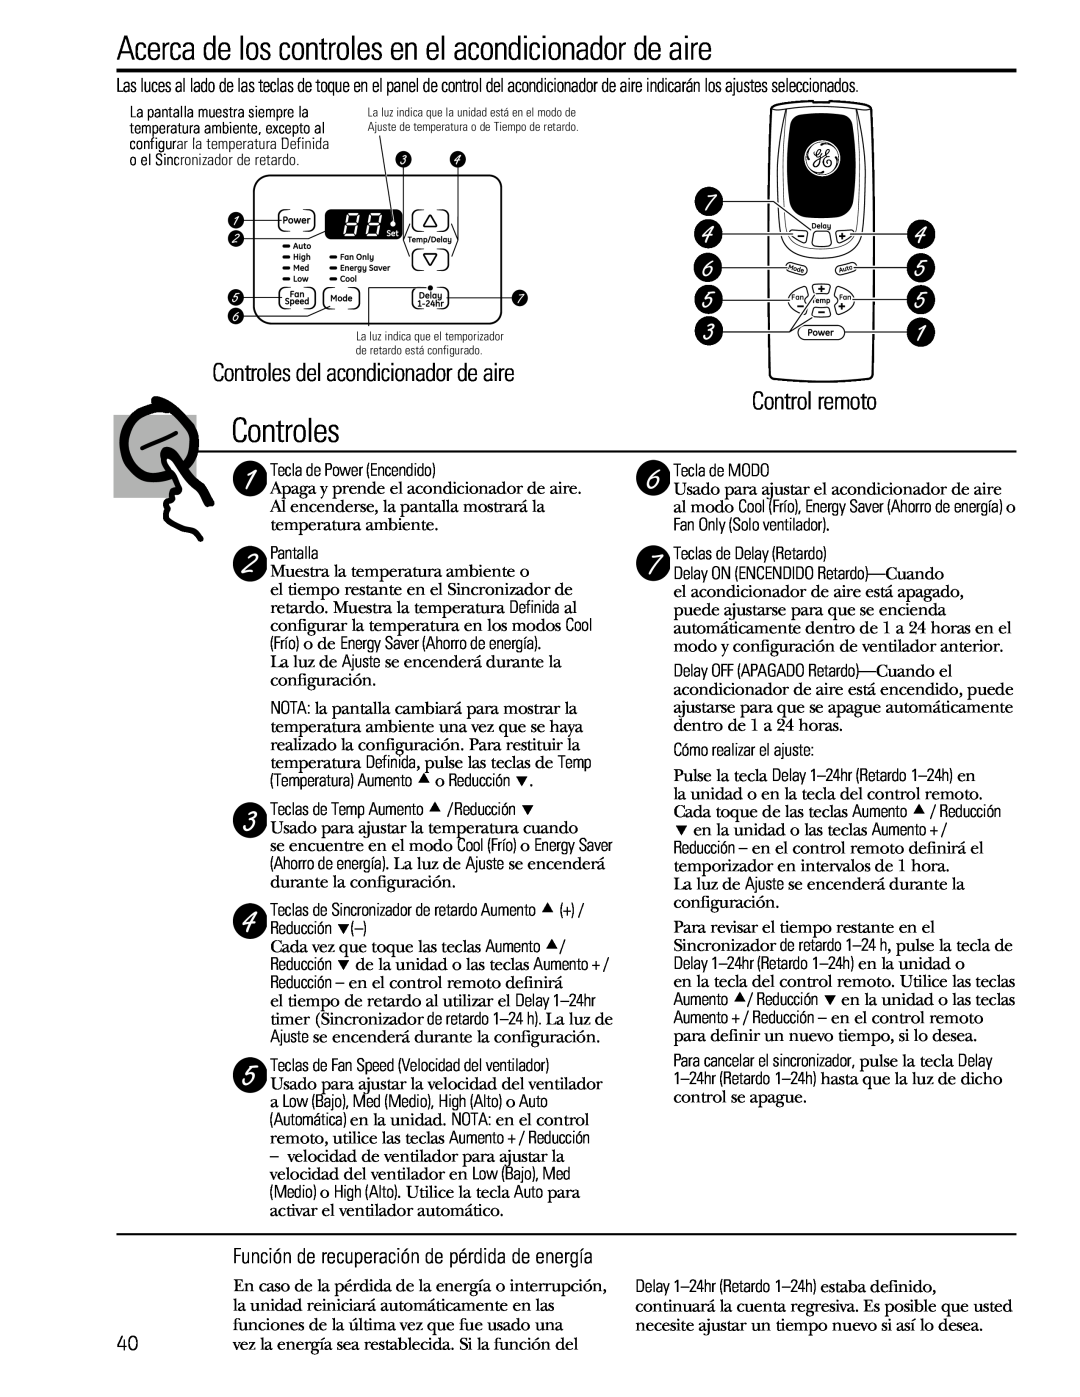 GE 880 Controles del acondicionador de aire, Control remoto, Función de recuperación de pérdida de energía 